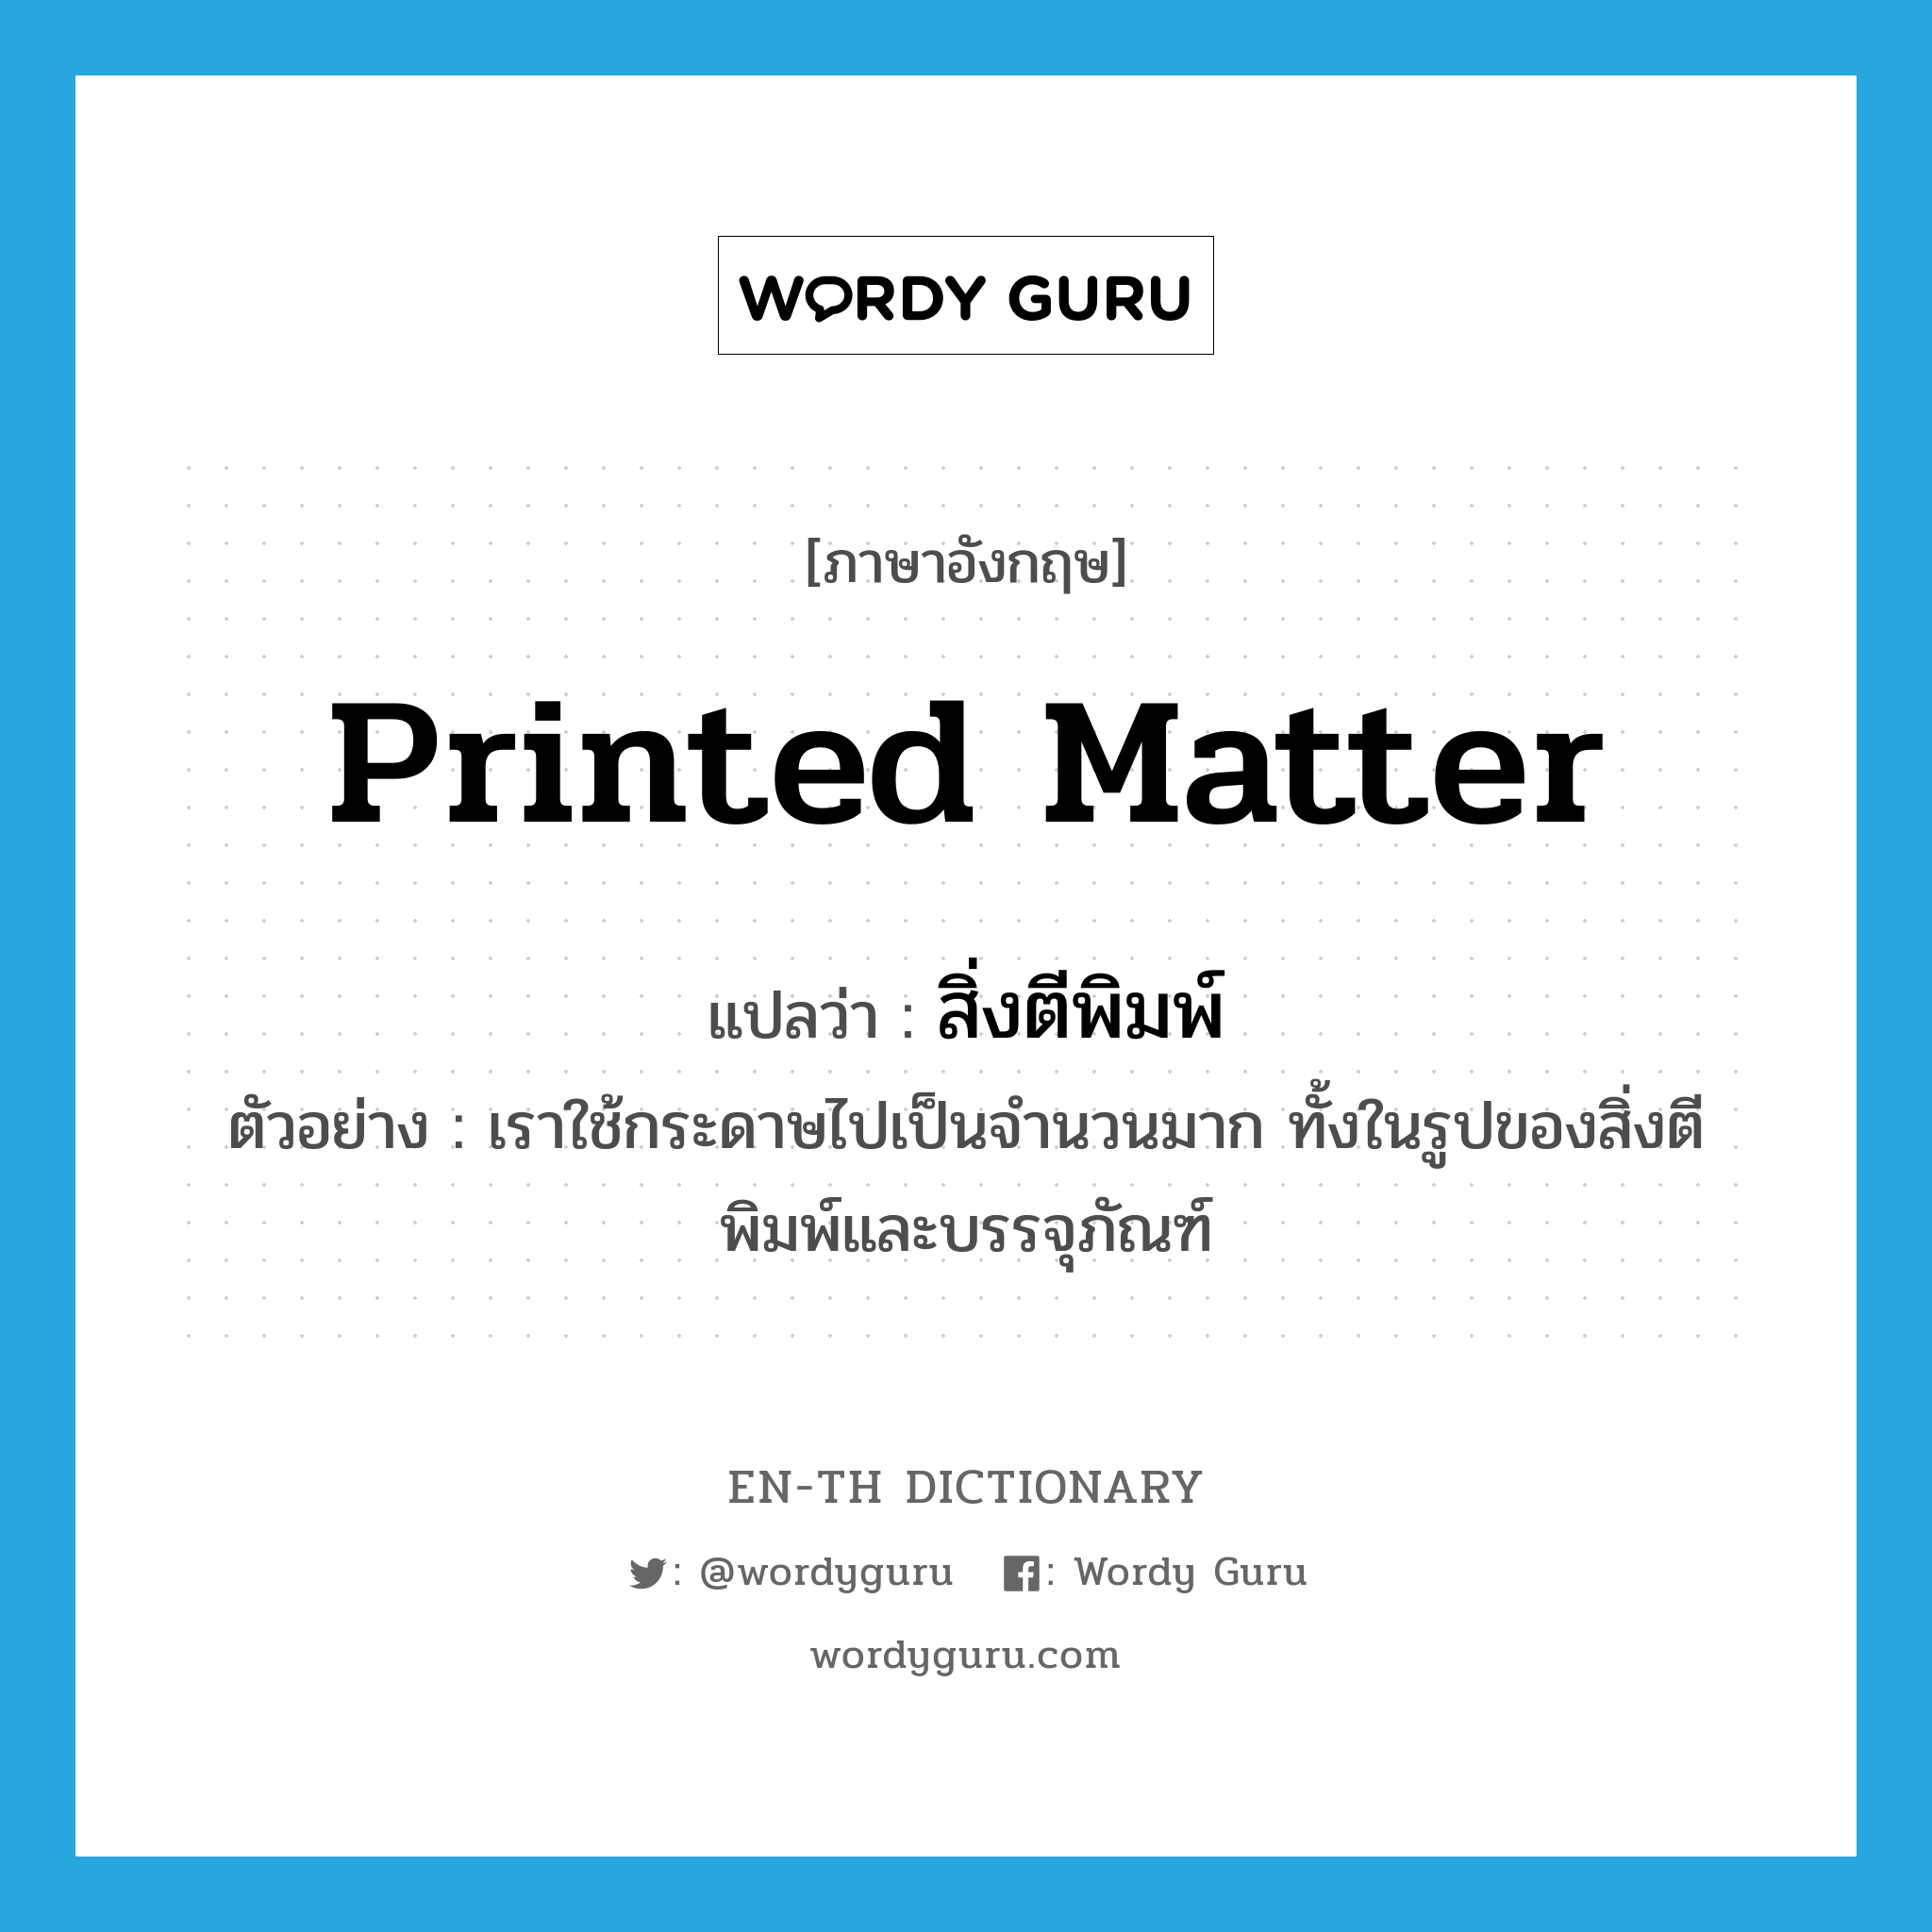 printed matter แปลว่า?, คำศัพท์ภาษาอังกฤษ printed matter แปลว่า สิ่งตีพิมพ์ ประเภท N ตัวอย่าง เราใช้กระดาษไปเป็นจำนวนมาก ทั้งในรูปของสิ่งตีพิมพ์และบรรจุภัณฑ์ หมวด N